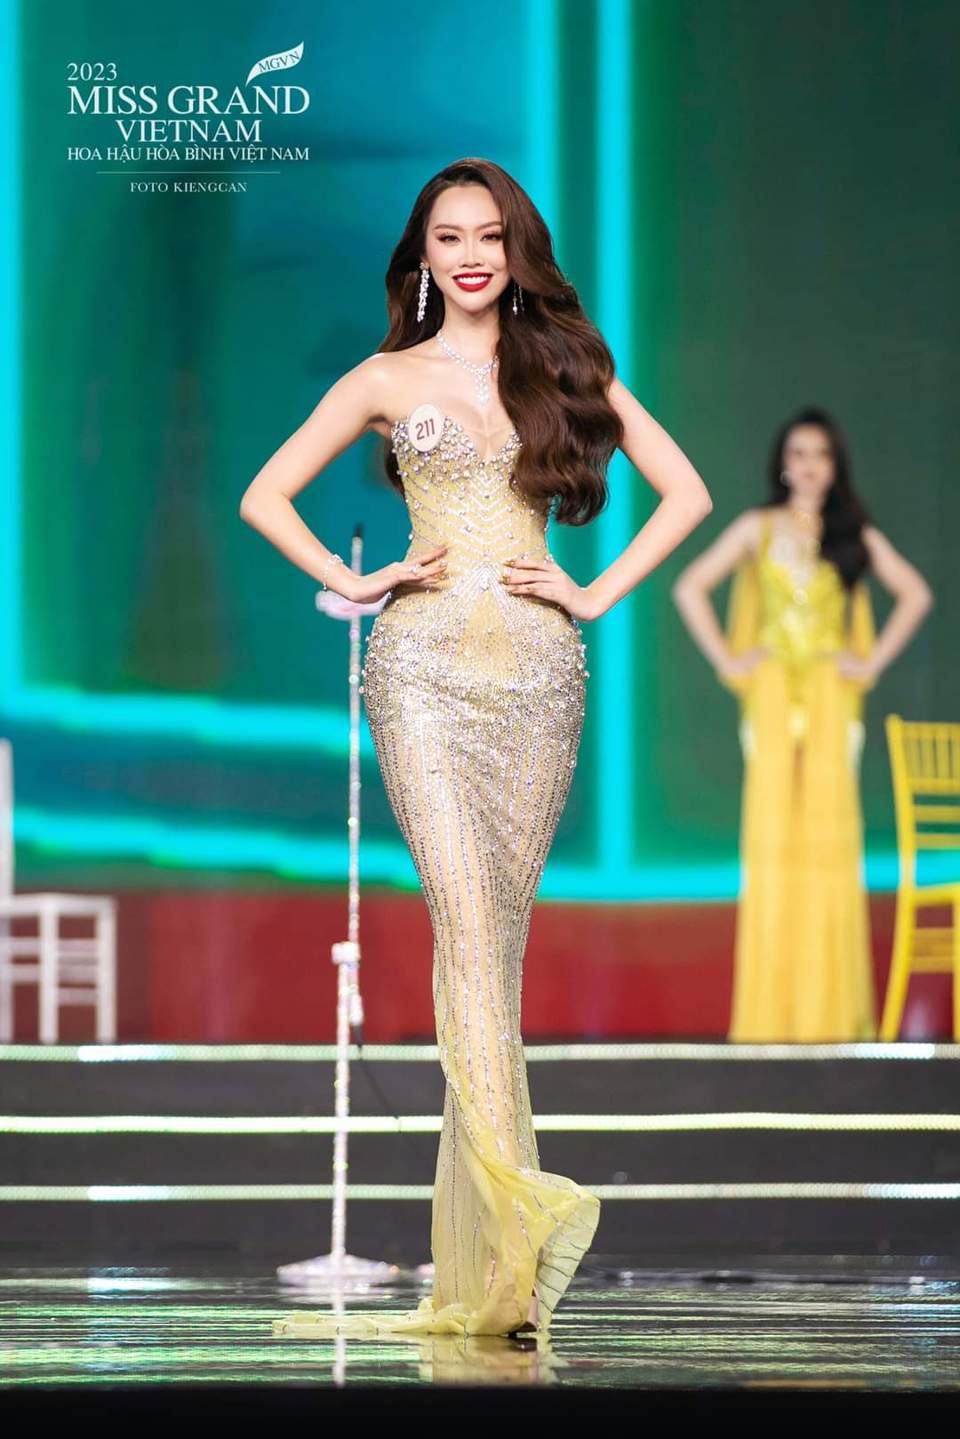 Trực tiếp: Bán kết Hoa hậu Hòa bình Việt Nam - Miss Grand Vietnam 2023 - Ảnh 5